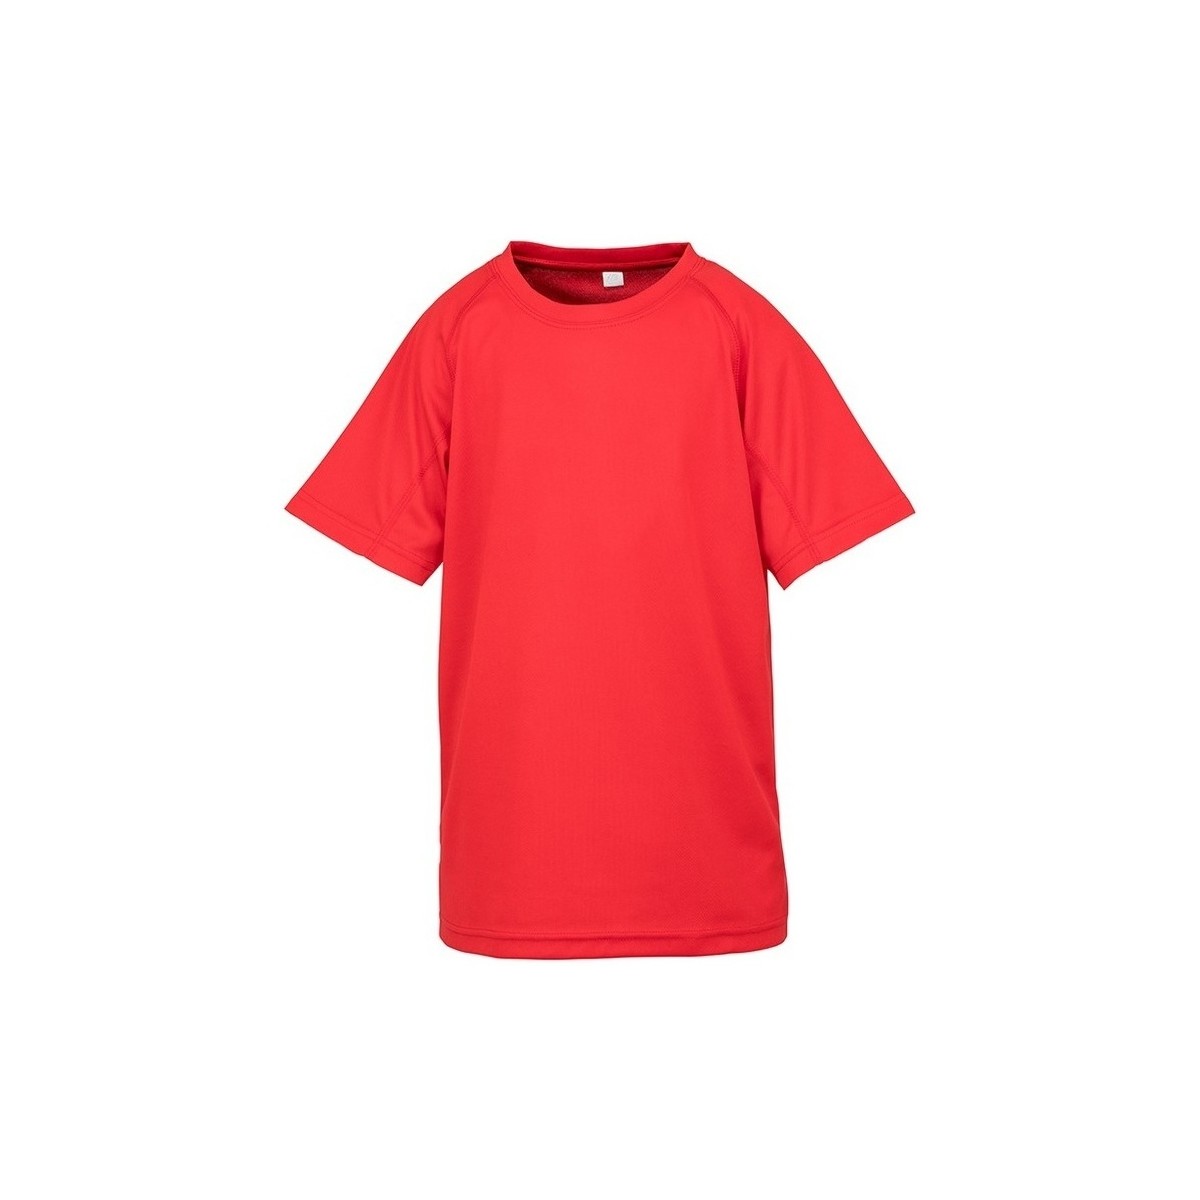 Vêtements Enfant T-shirts manches courtes Spiro SR287B Rouge